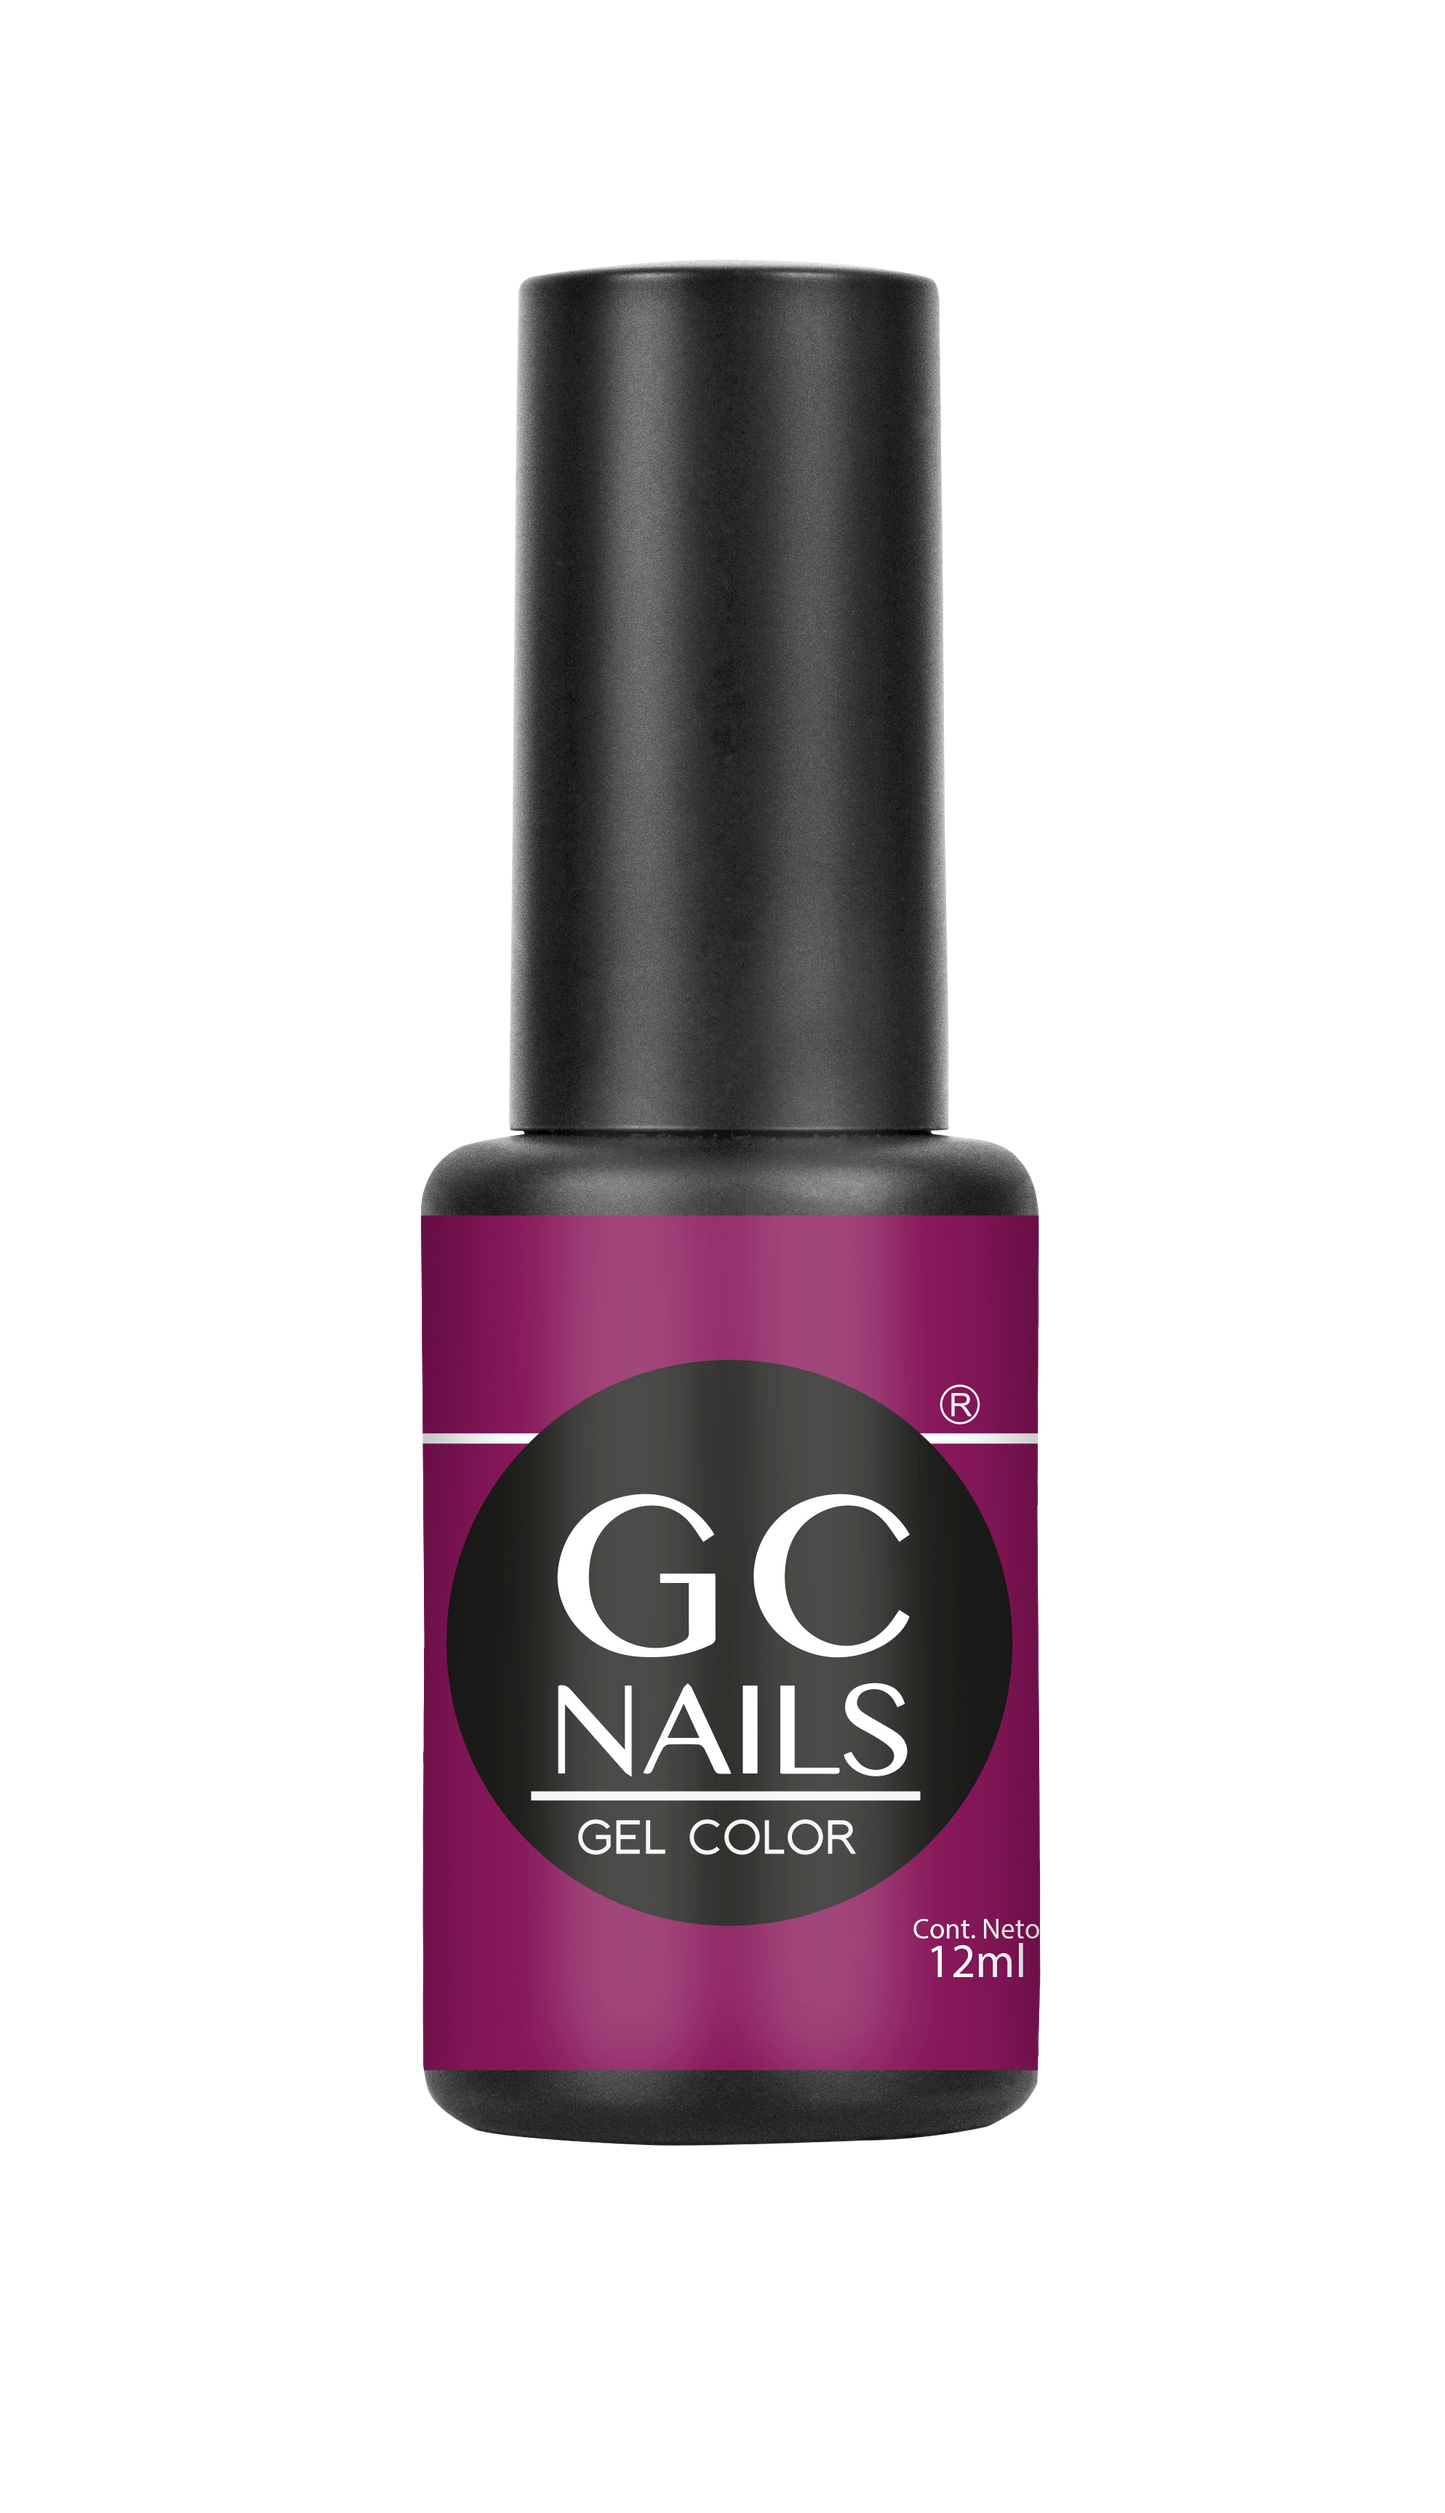 GC nails bel-color 12ml DALHIA 88